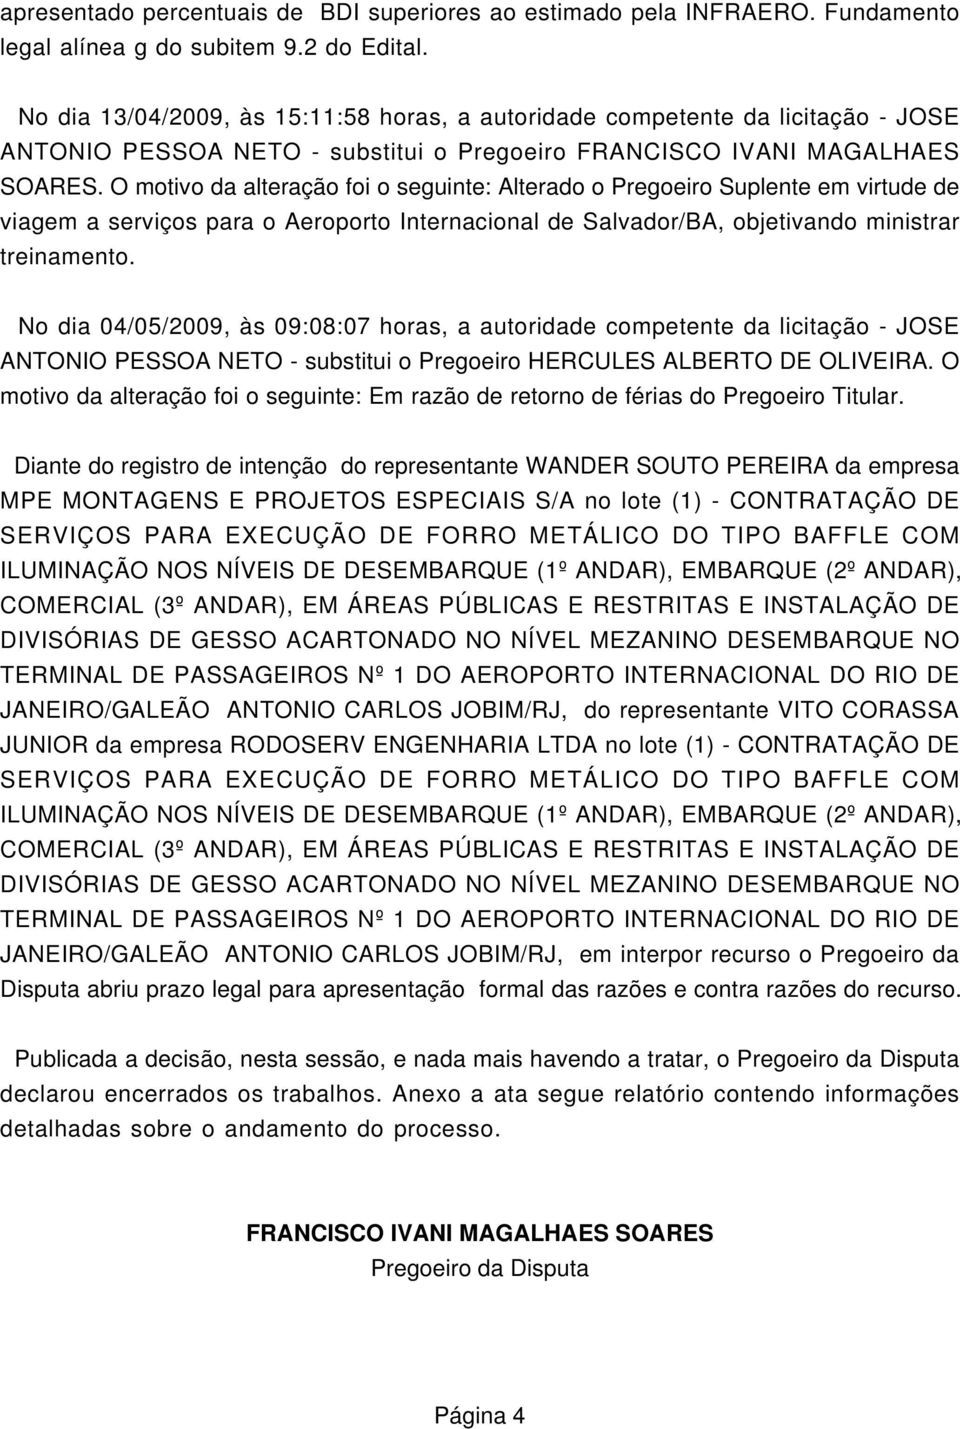 O motivo da alteração foi o seguinte: Alterado o Pregoeiro Suplente em virtude de viagem a serviços para o Aeroporto Internacional de Salvador/BA, objetivando ministrar treinamento.